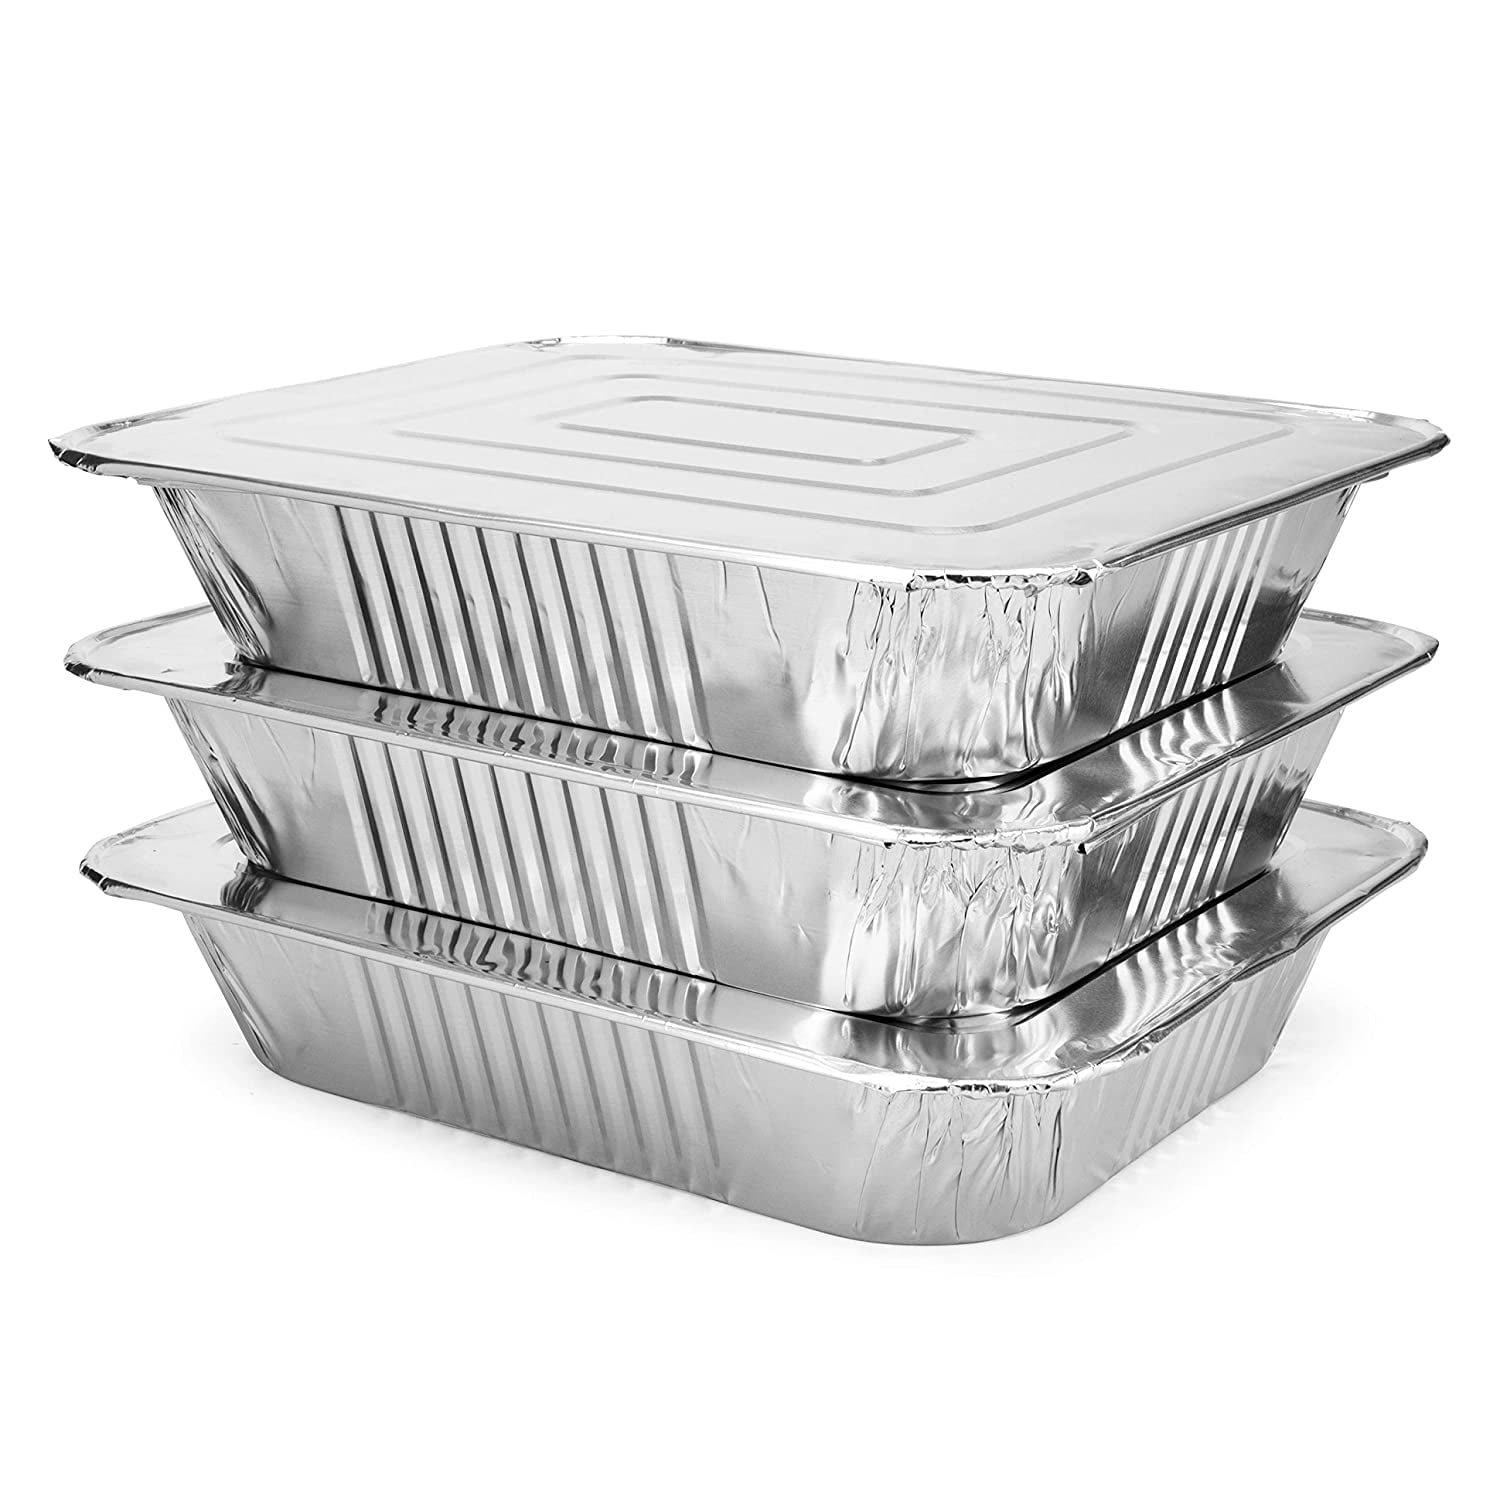 Foil Pan Holder – Aluminum Baking Dish Carrier – Potluck Party Travel Set -  4-Pieces - Black